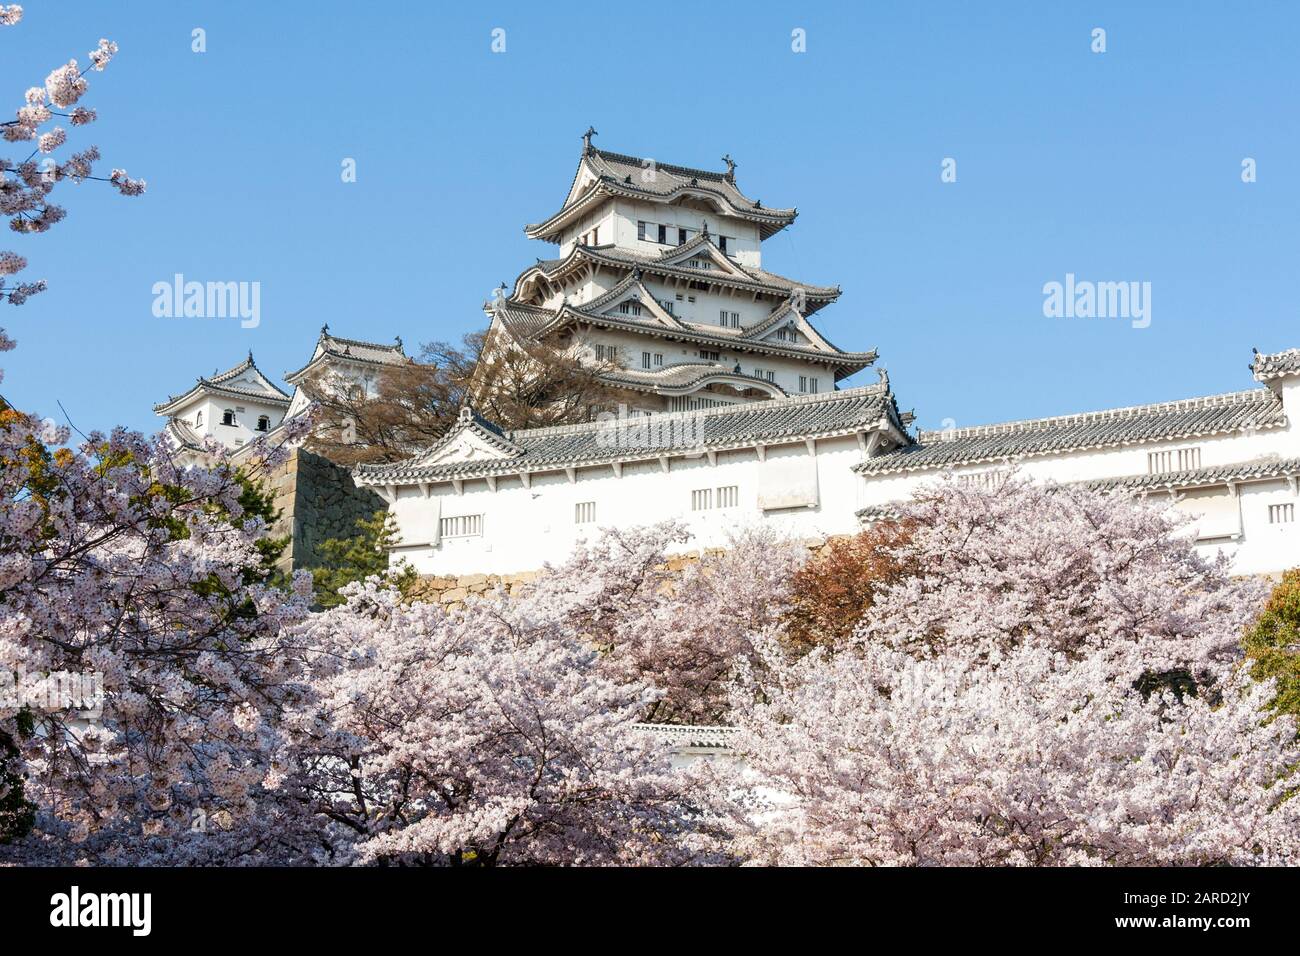 Destination touristique populaire, le château d'Himeji se dresse au Japon, s'imposant au fil des cerisiers en fleurs printanières sur fond de ciel bleu clair. Banque D'Images